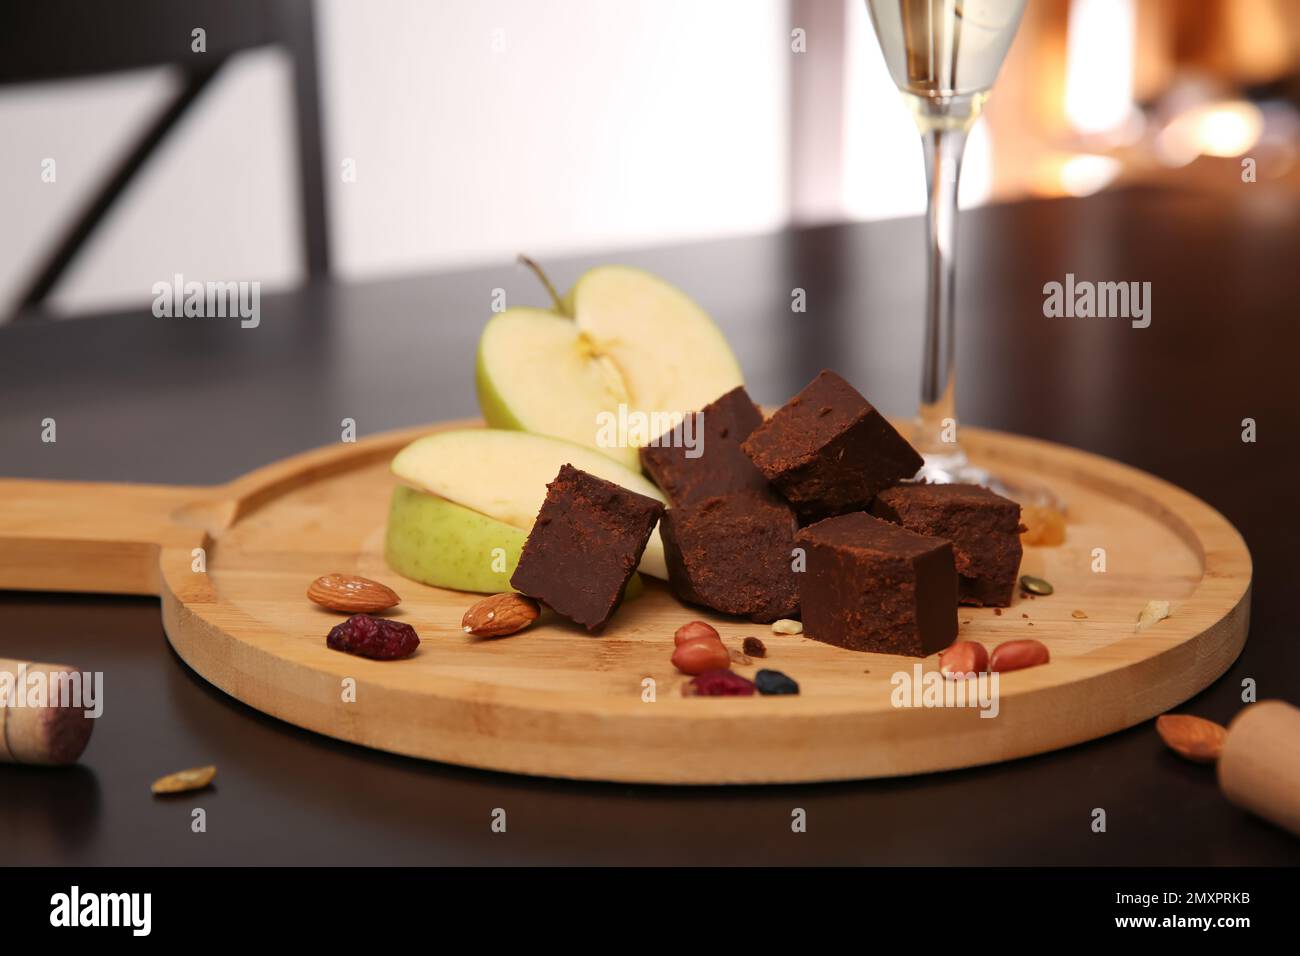 Delizioso formaggio brunost, mela e noci sul tavolo, primo piano Foto Stock